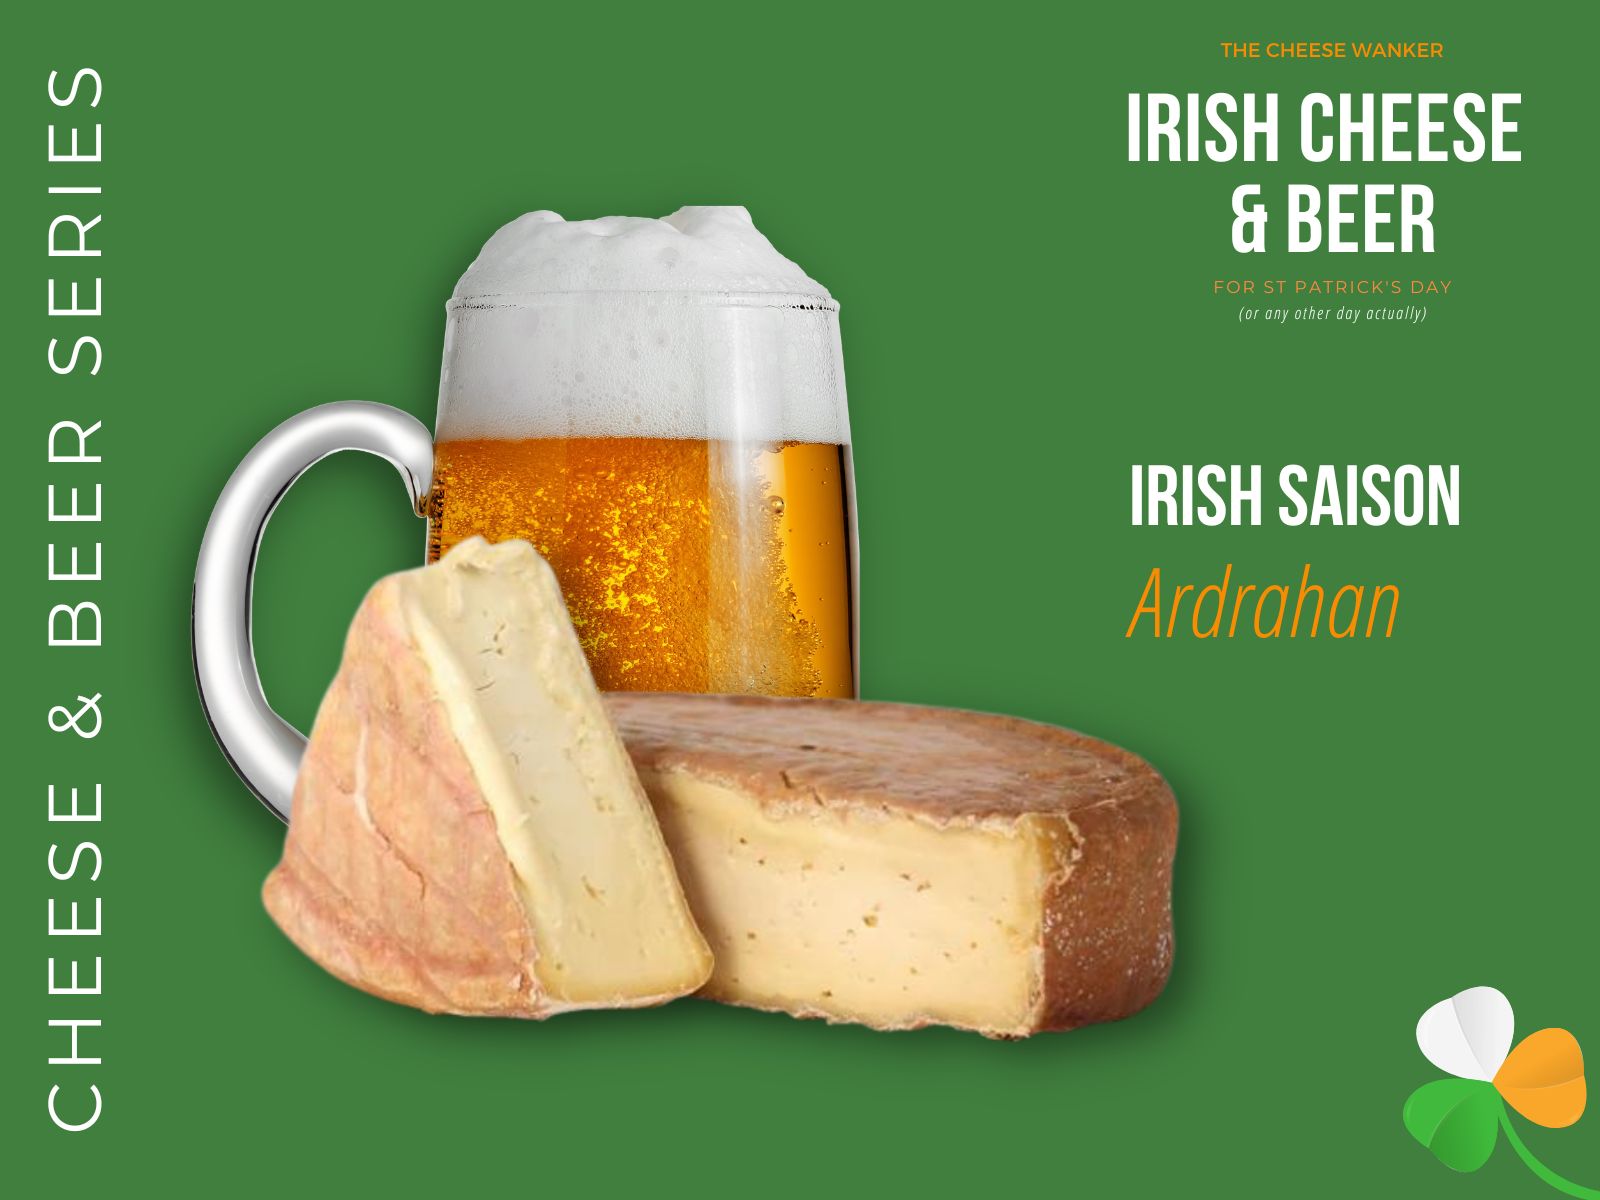 Ardrahan & Irish Saison